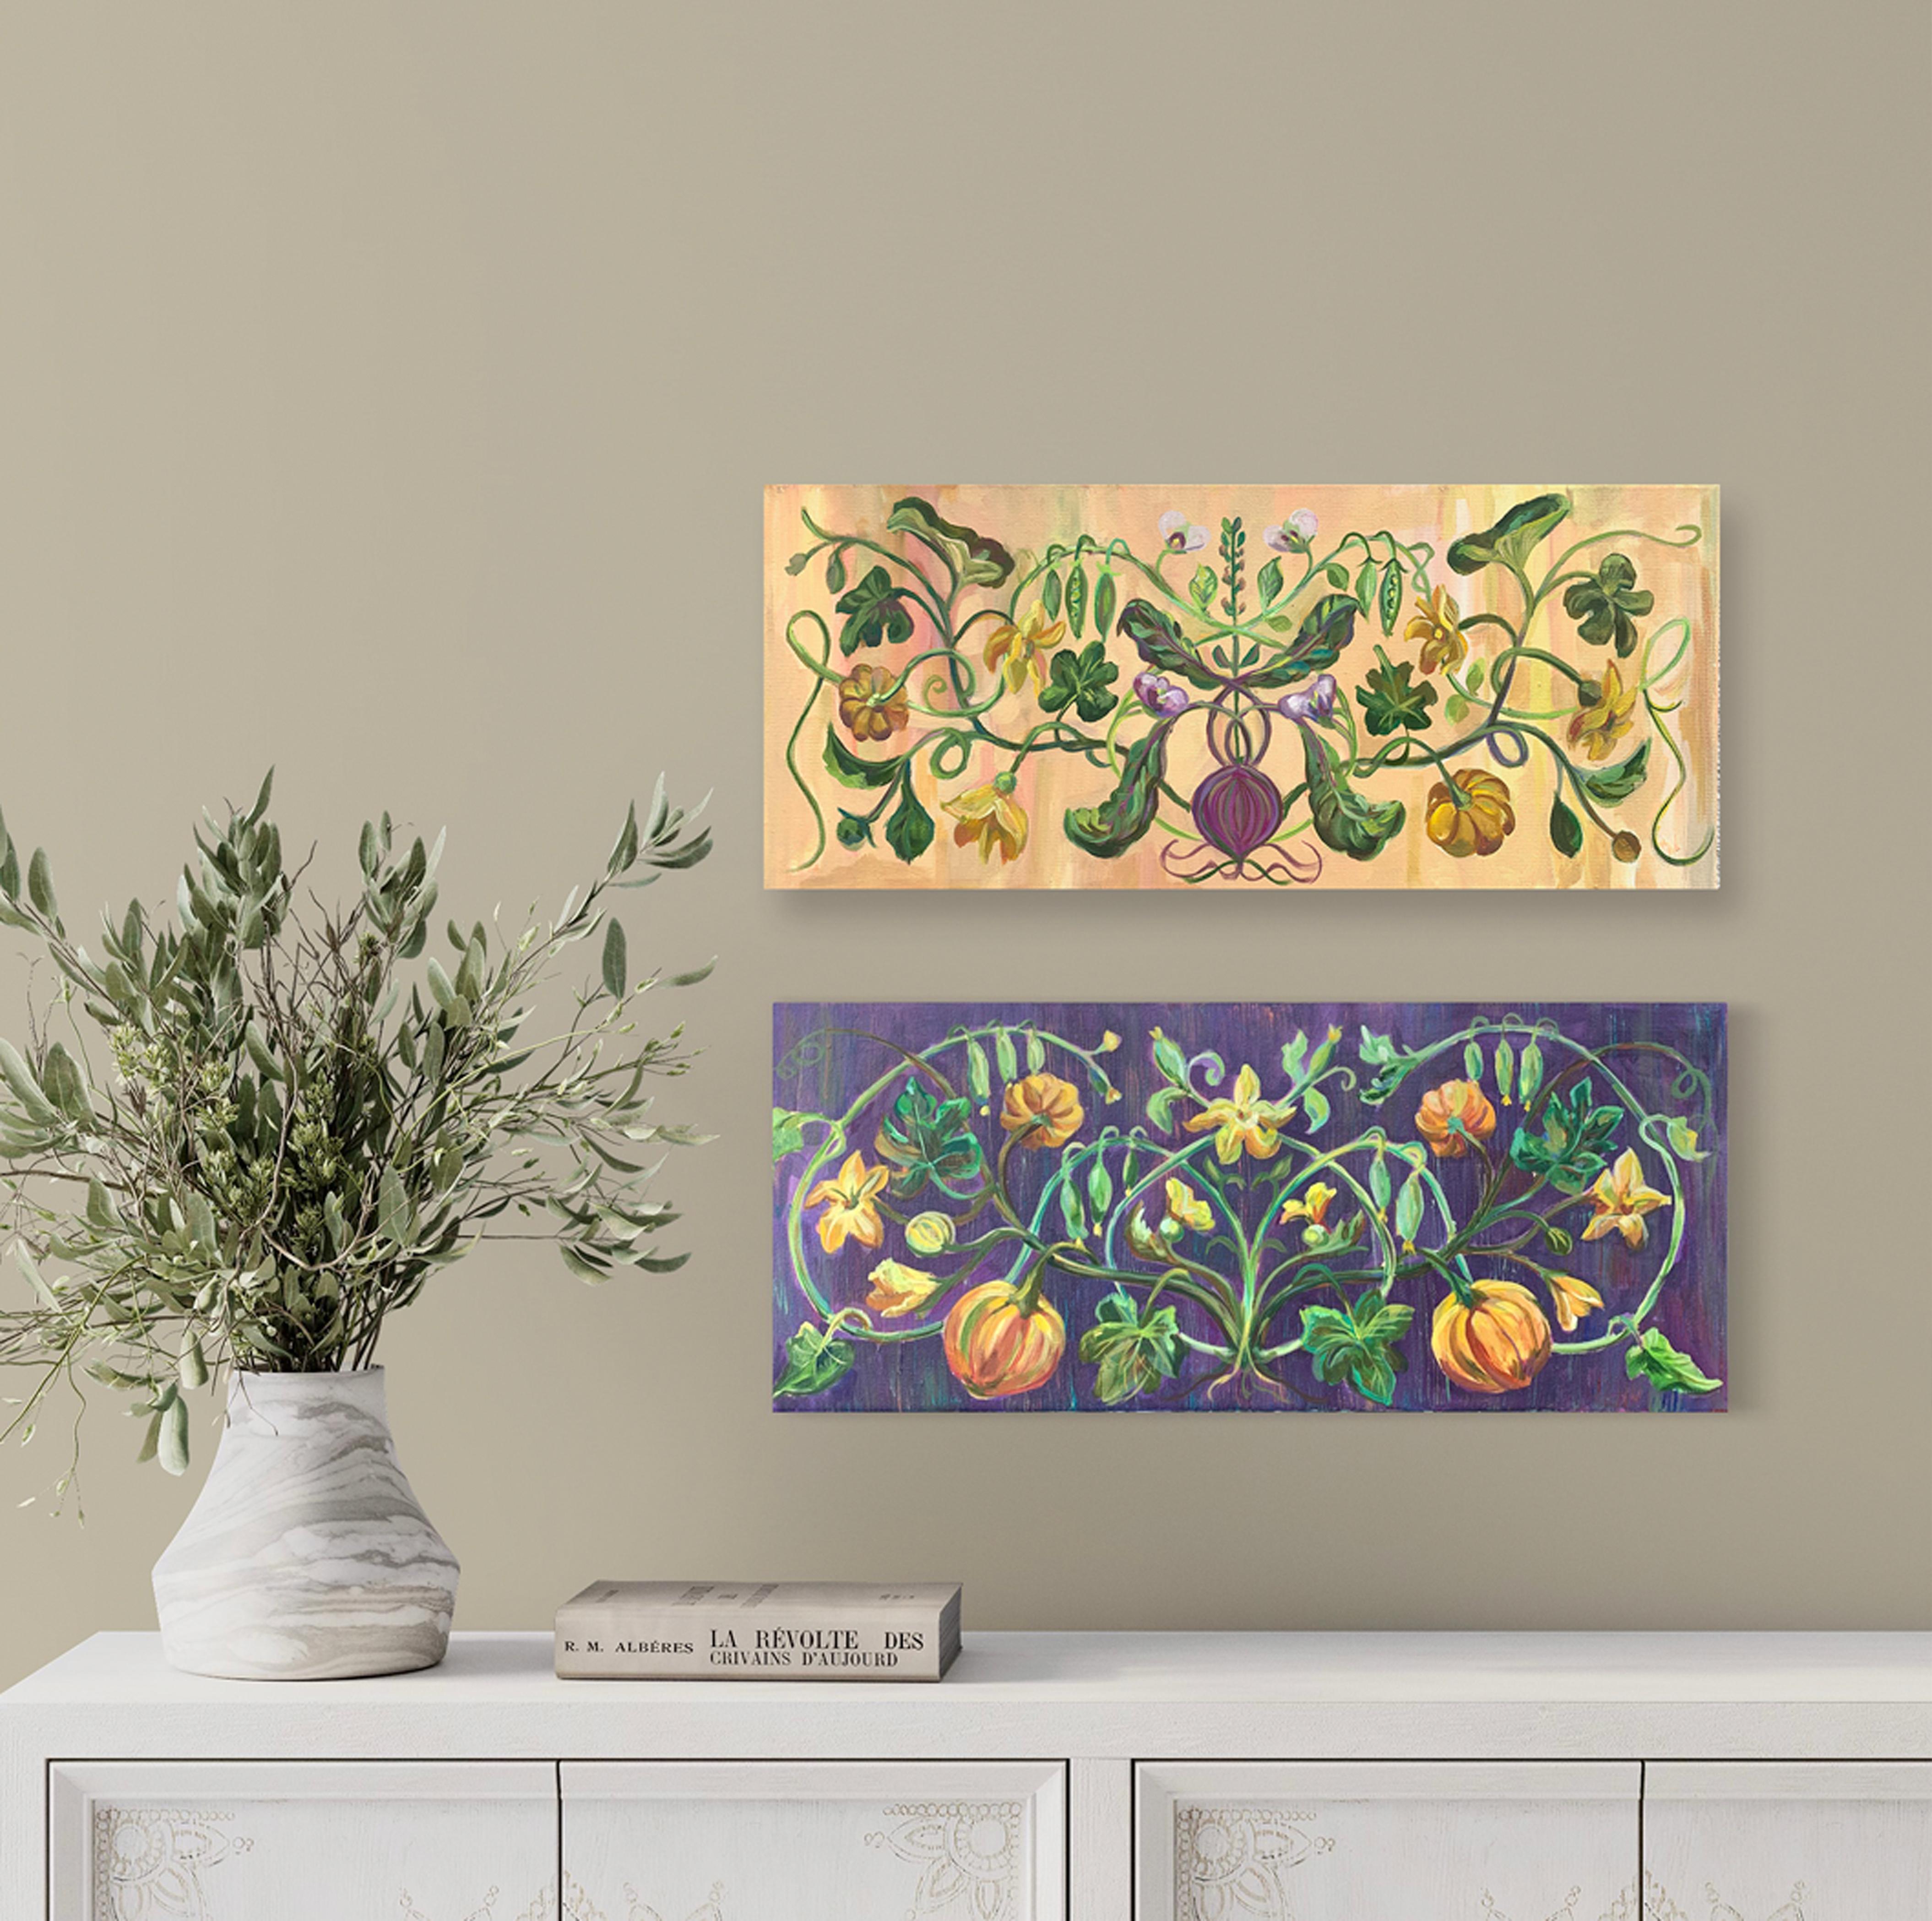 Exquisite Ornamente kletternder Pflanzen - beige Farben (Impressionismus), Painting, von Momalyu Liubov